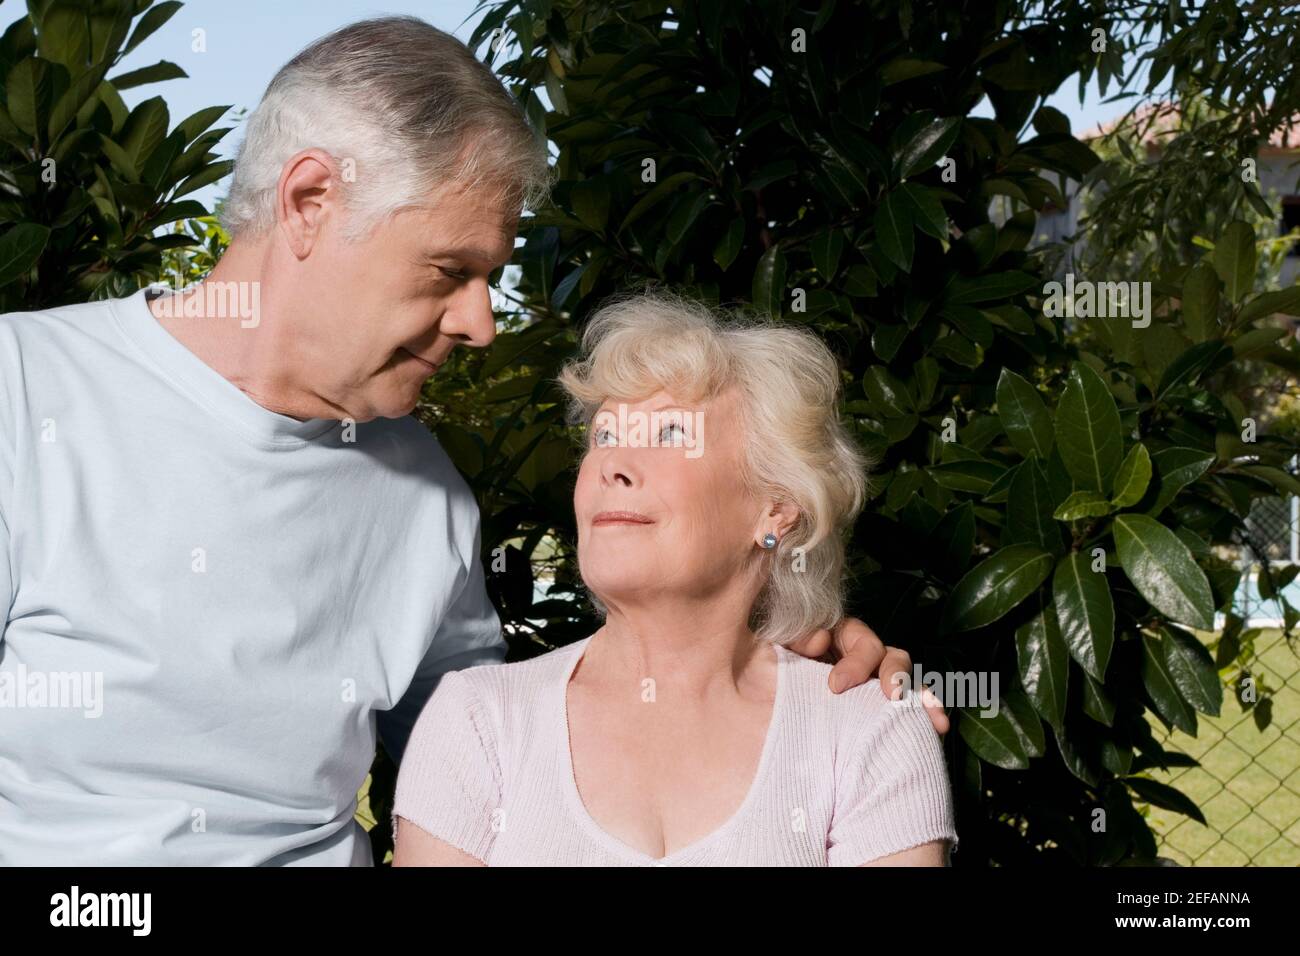 Senior man with his arm around a senior woman Stock Photo